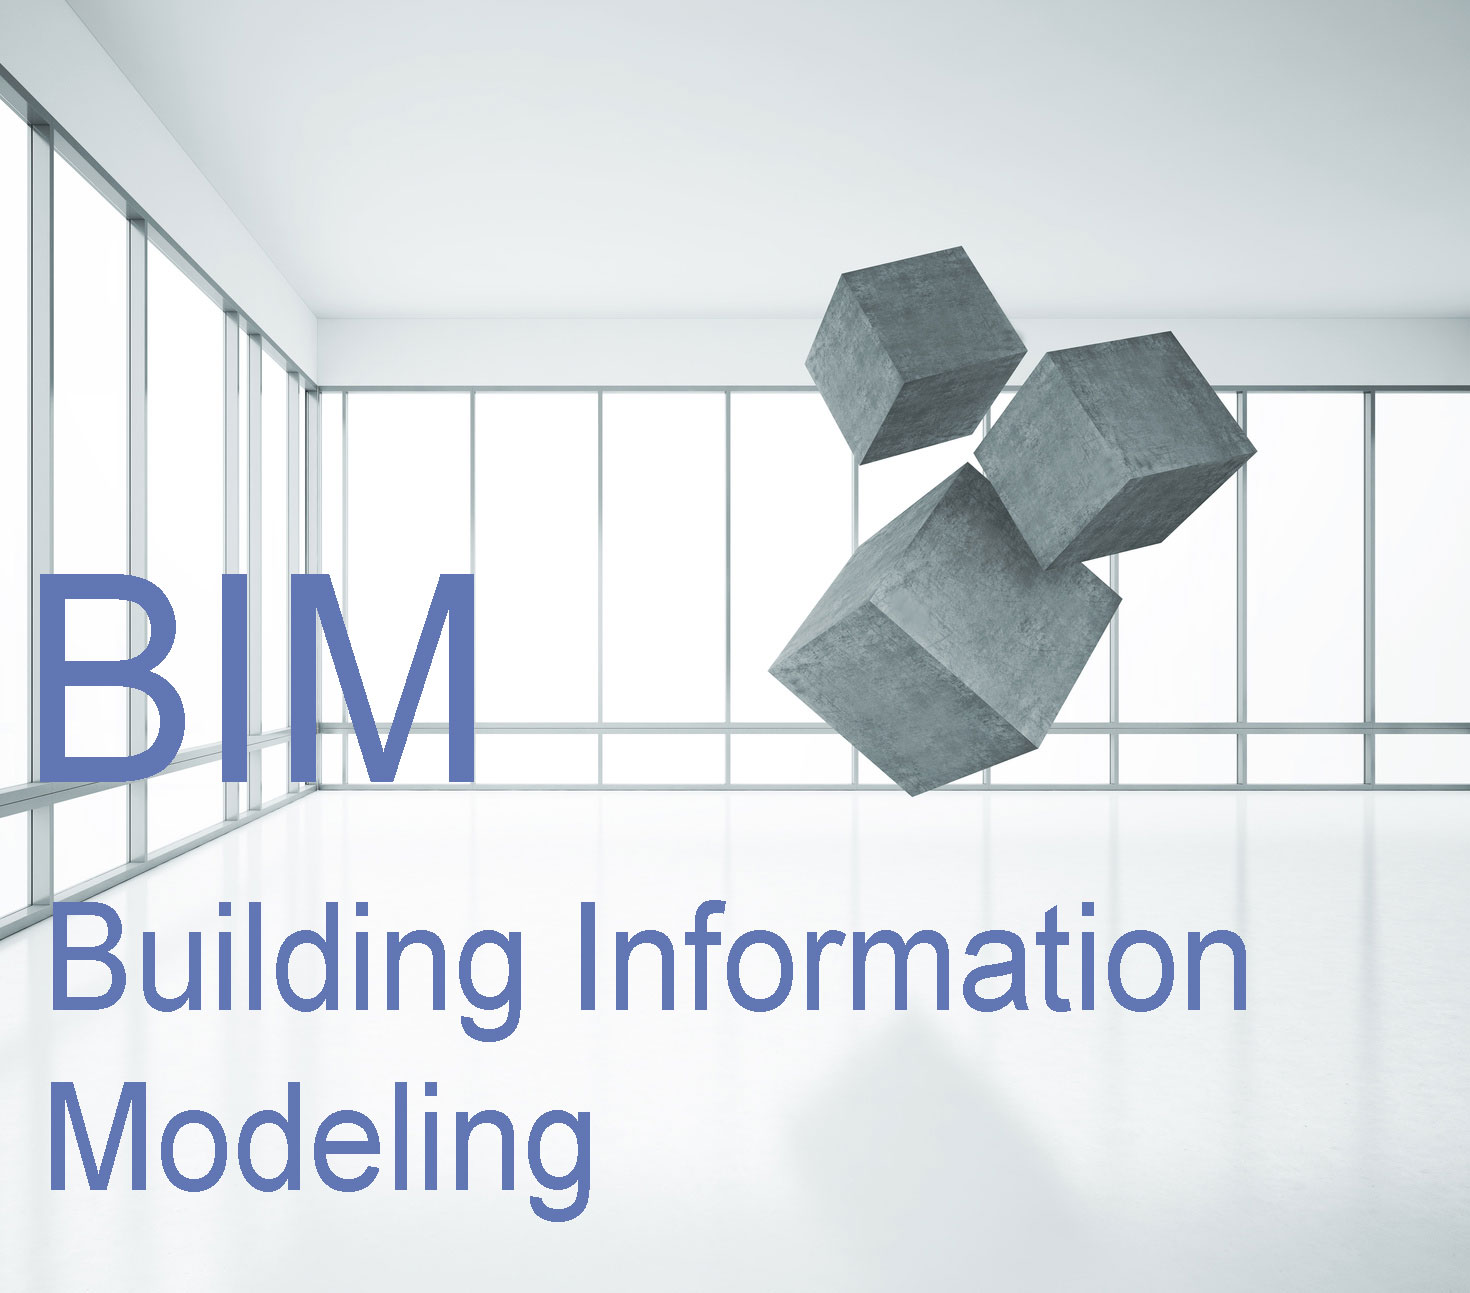 BIM- Building Information Modeling